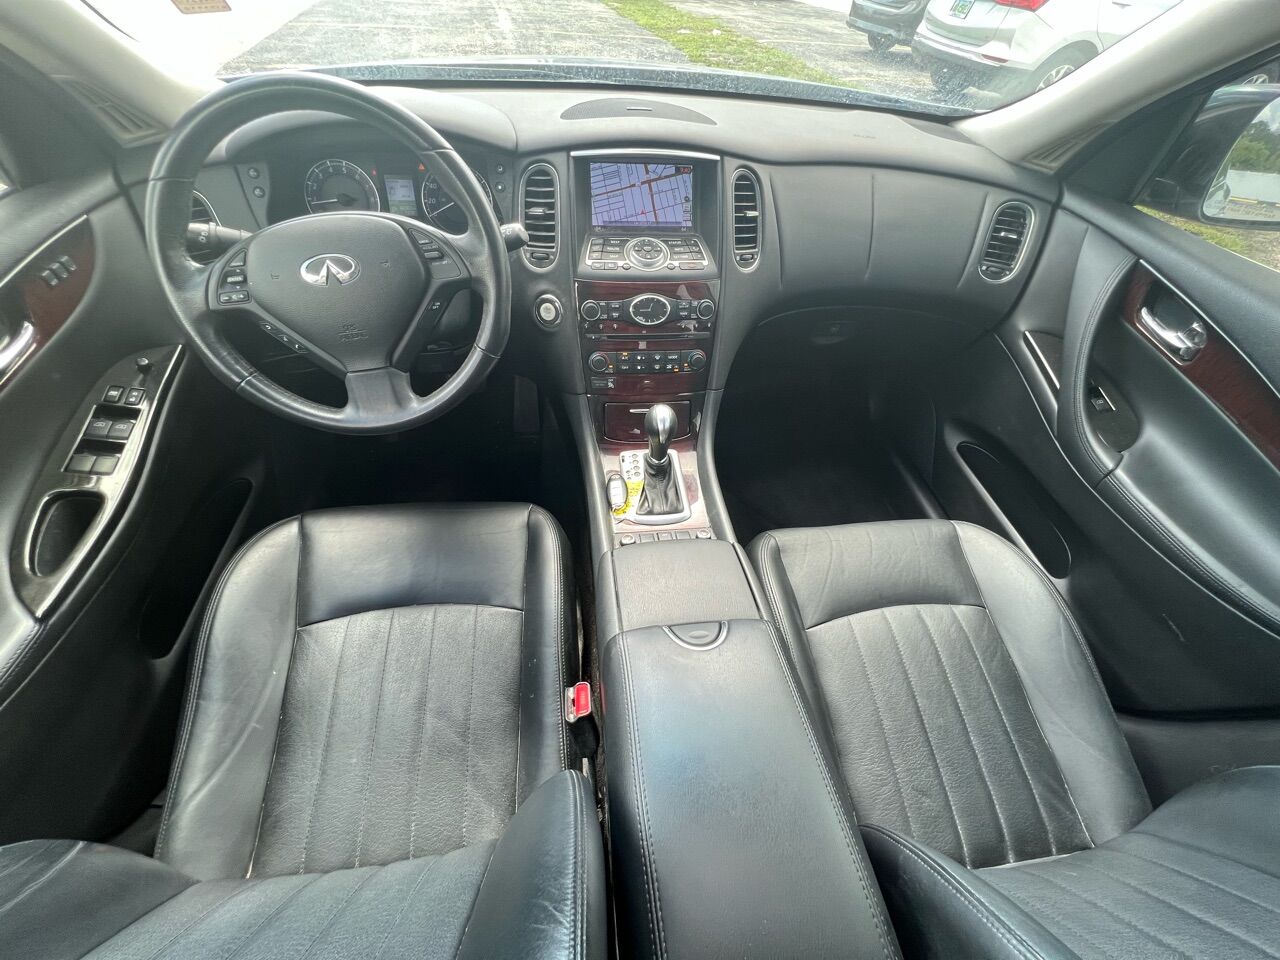 2017 INFINITI QX50 Wagon - $13,900